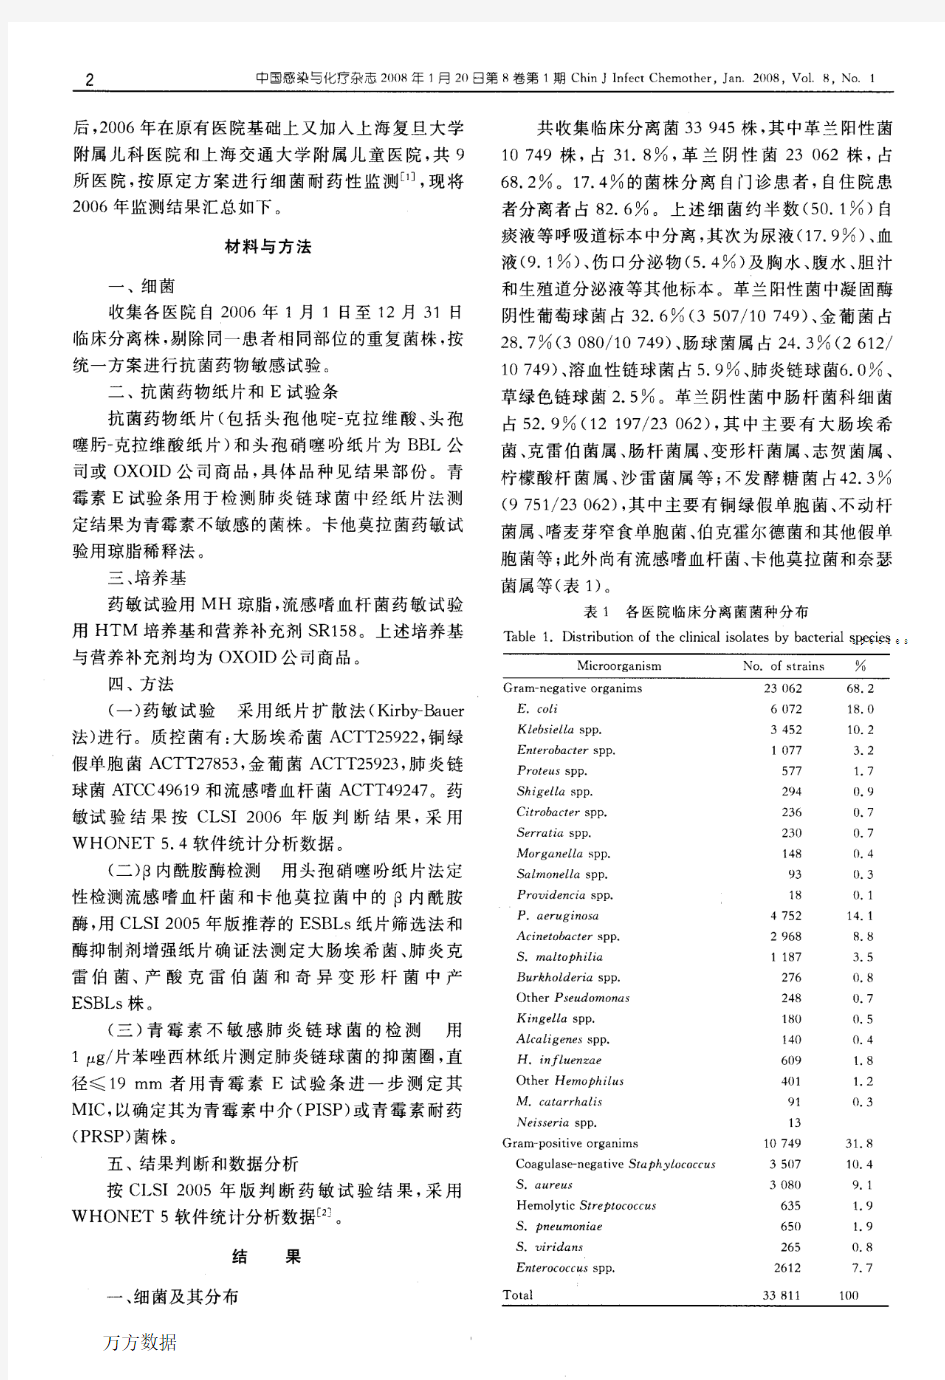 2006年中国CHINET细菌耐药性监测